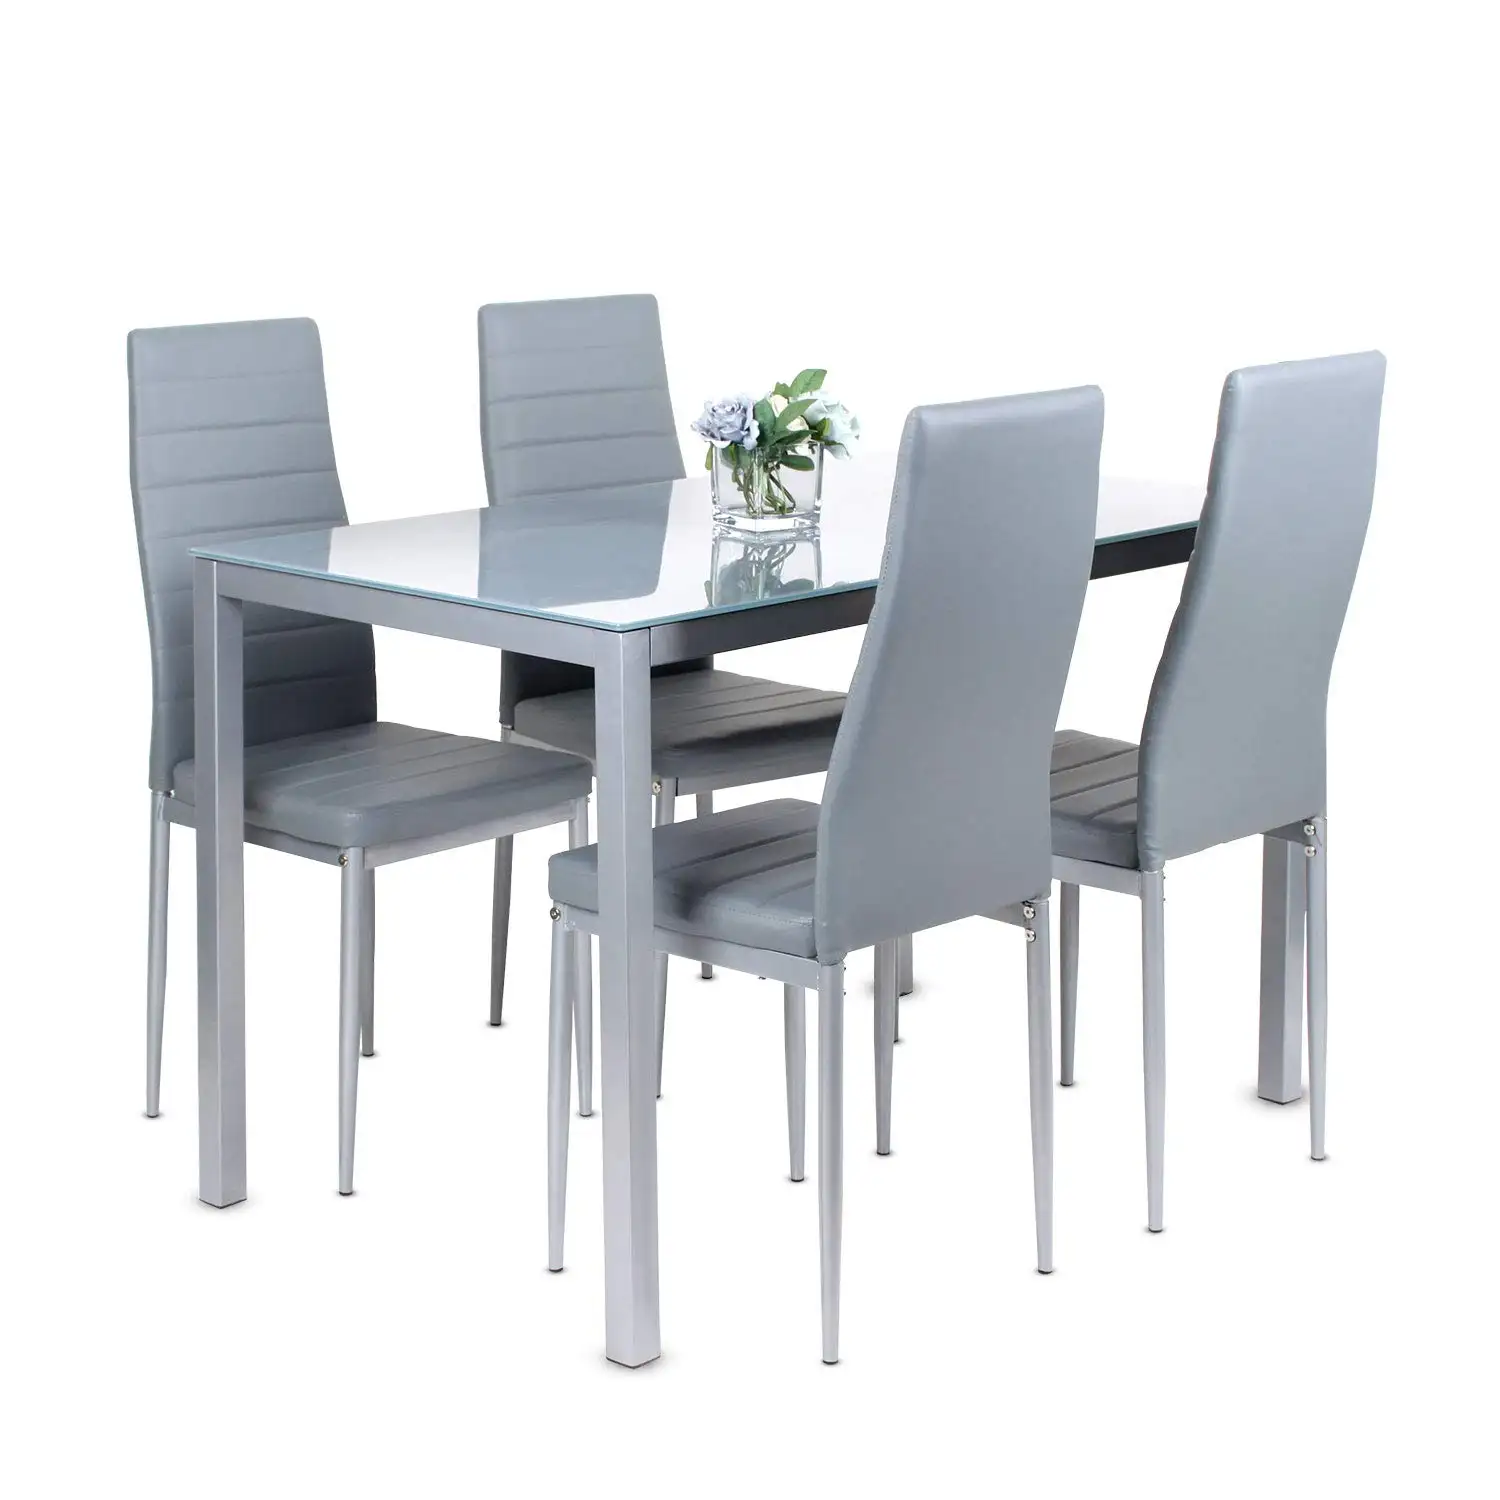 5 חתיכות 1.2 m שולחן אוכל עם 4 PVC אפור עור כיסאות מזג זכוכית שולחן למעלה מטבח אוכל שולחן סט מסעדה חליפות